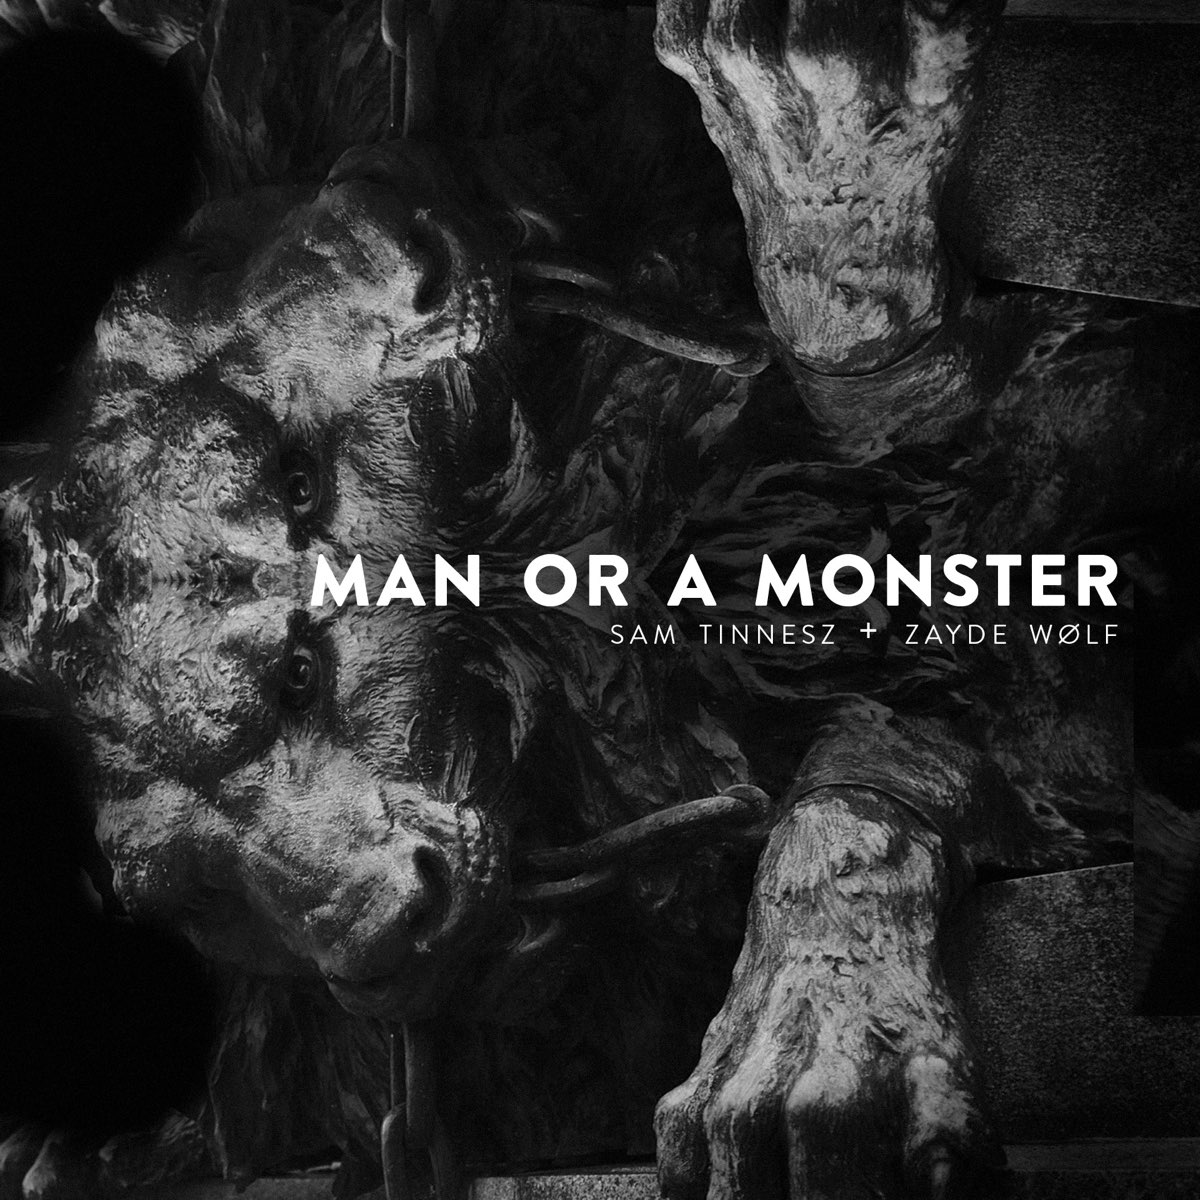 Man or monster